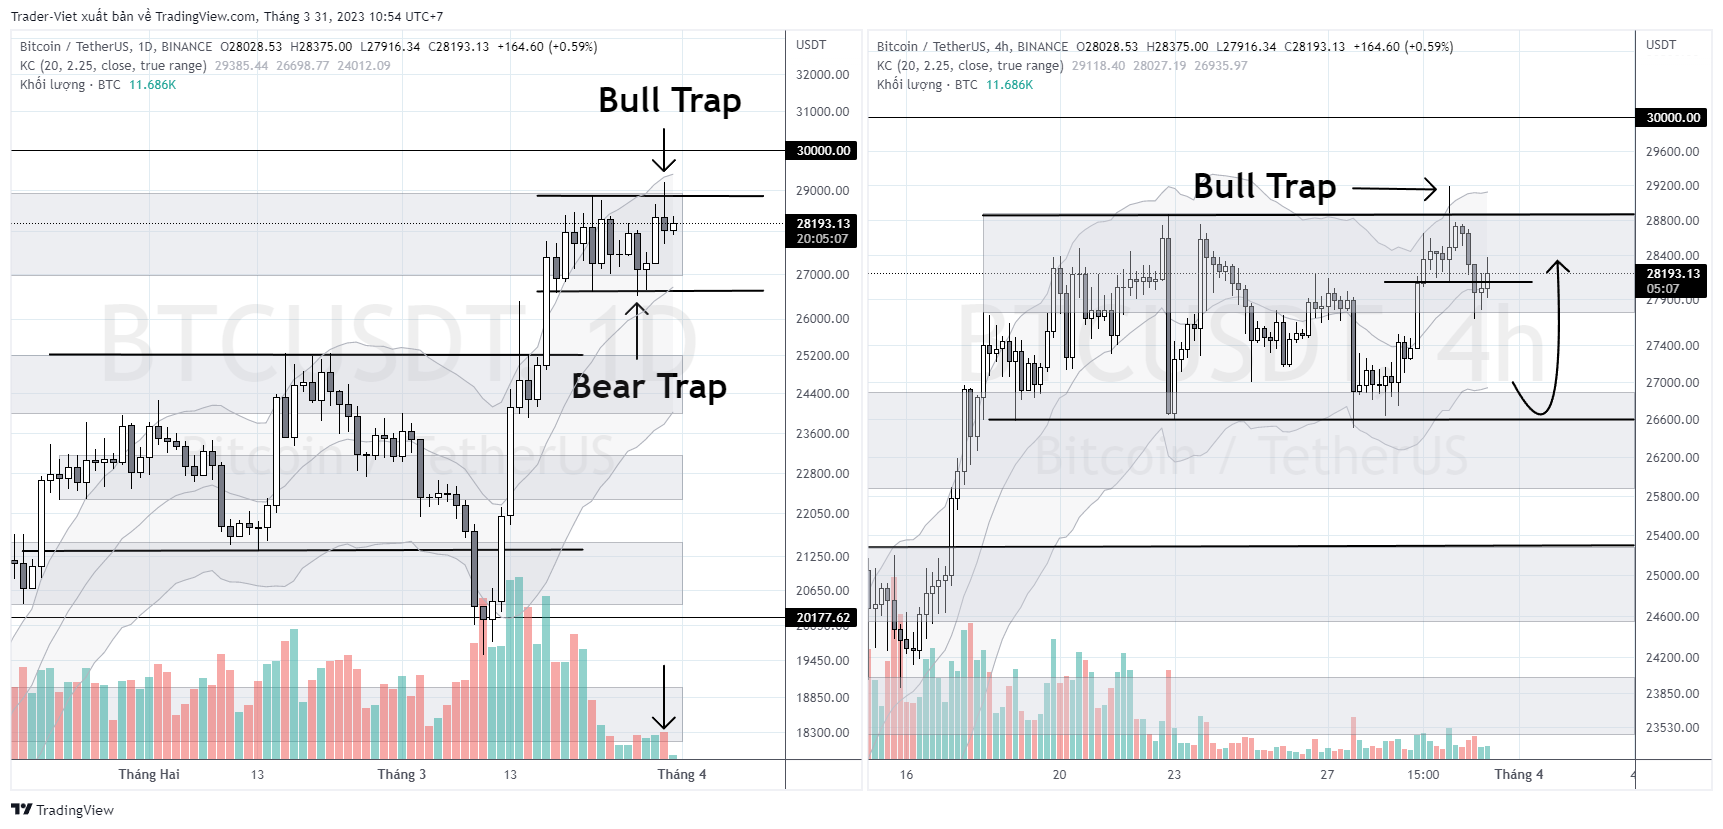 Phân tích Bitcoin hôm nay (31/03) - Bear Trap rồi lại Bull Trap, giá sẽ đi về đâu?